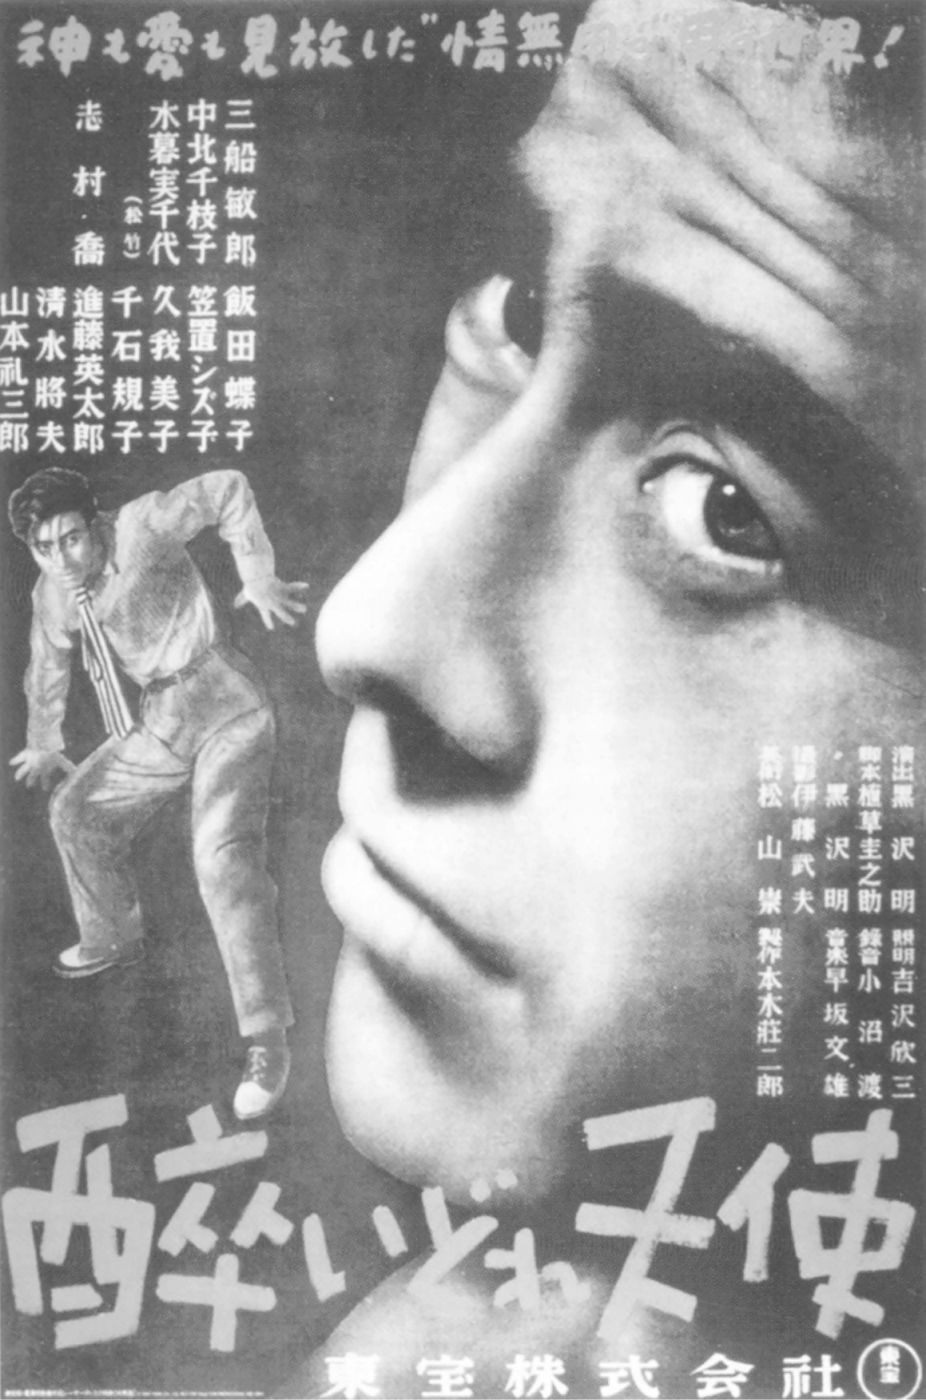 黑泽明执导影片《泥醉天使》的海报，1948年<br/>版权所有：东宝株式会社